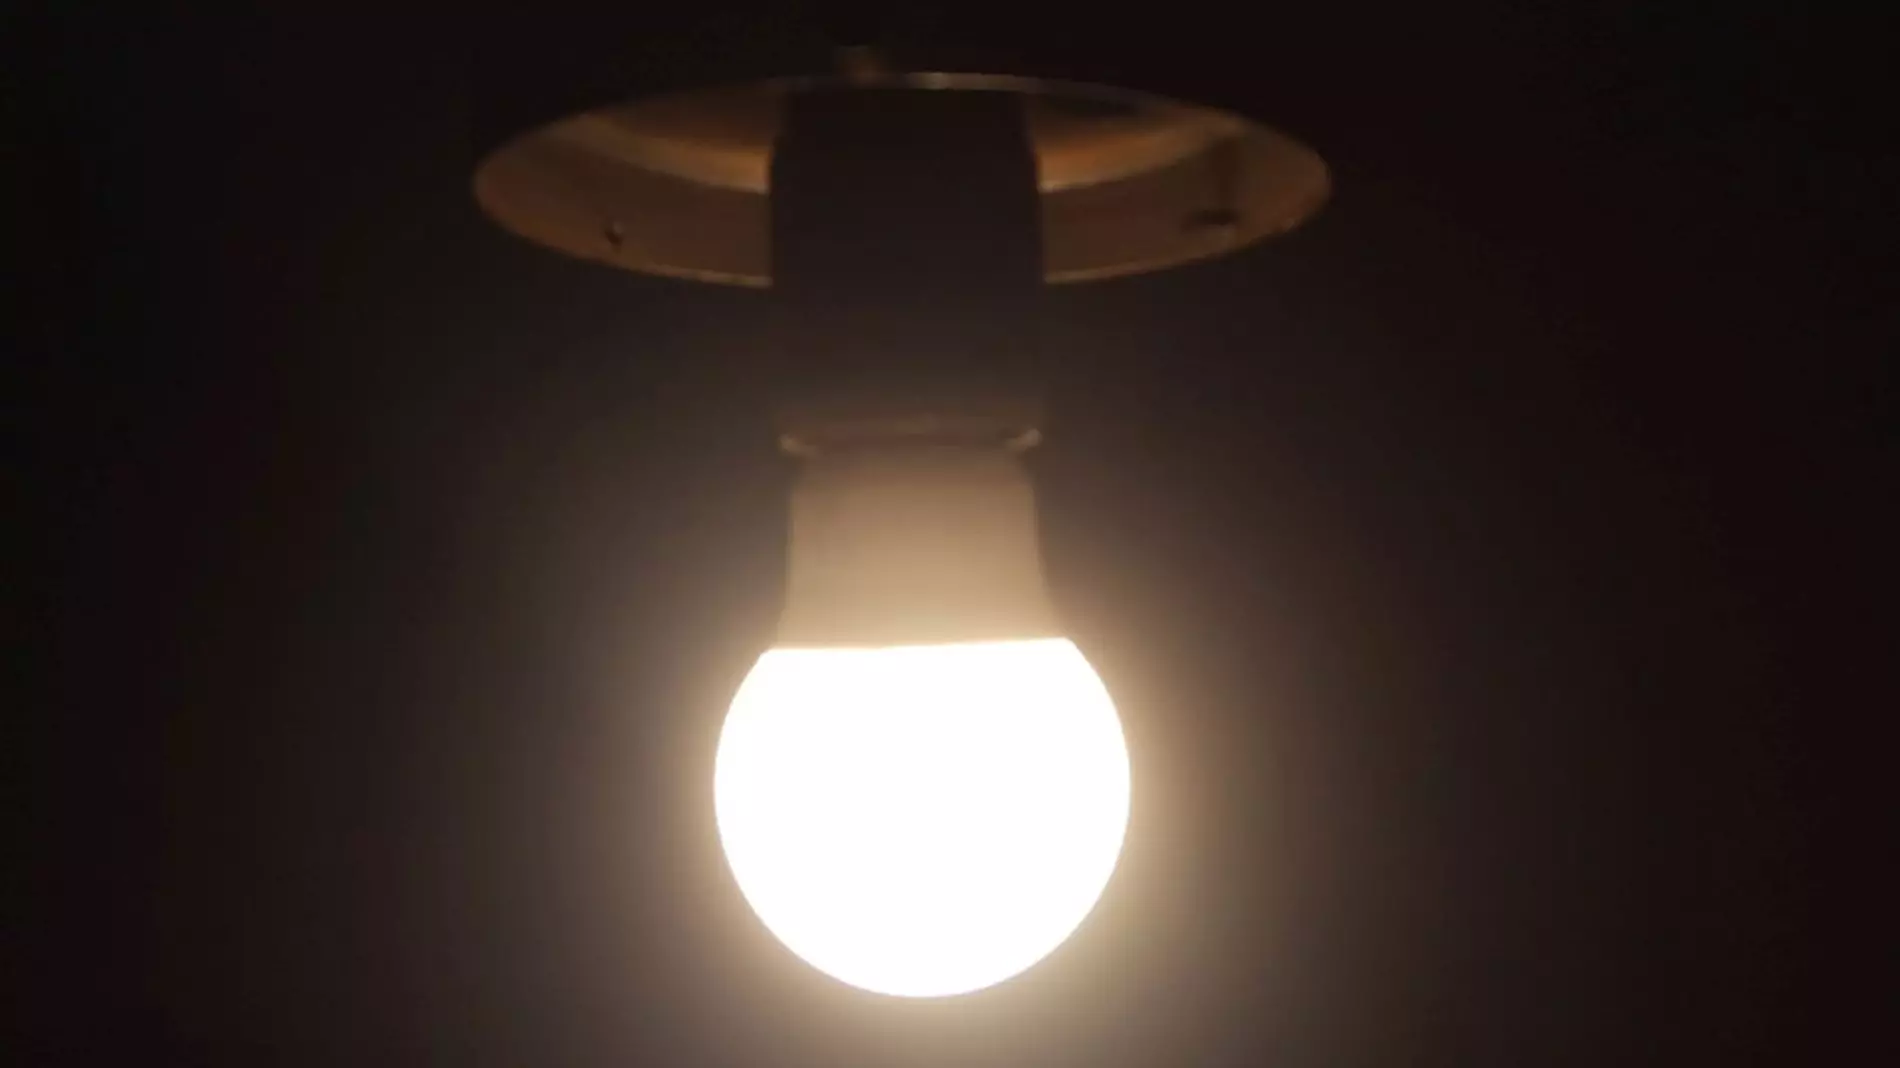 Лампы дневного света могут быть опасны